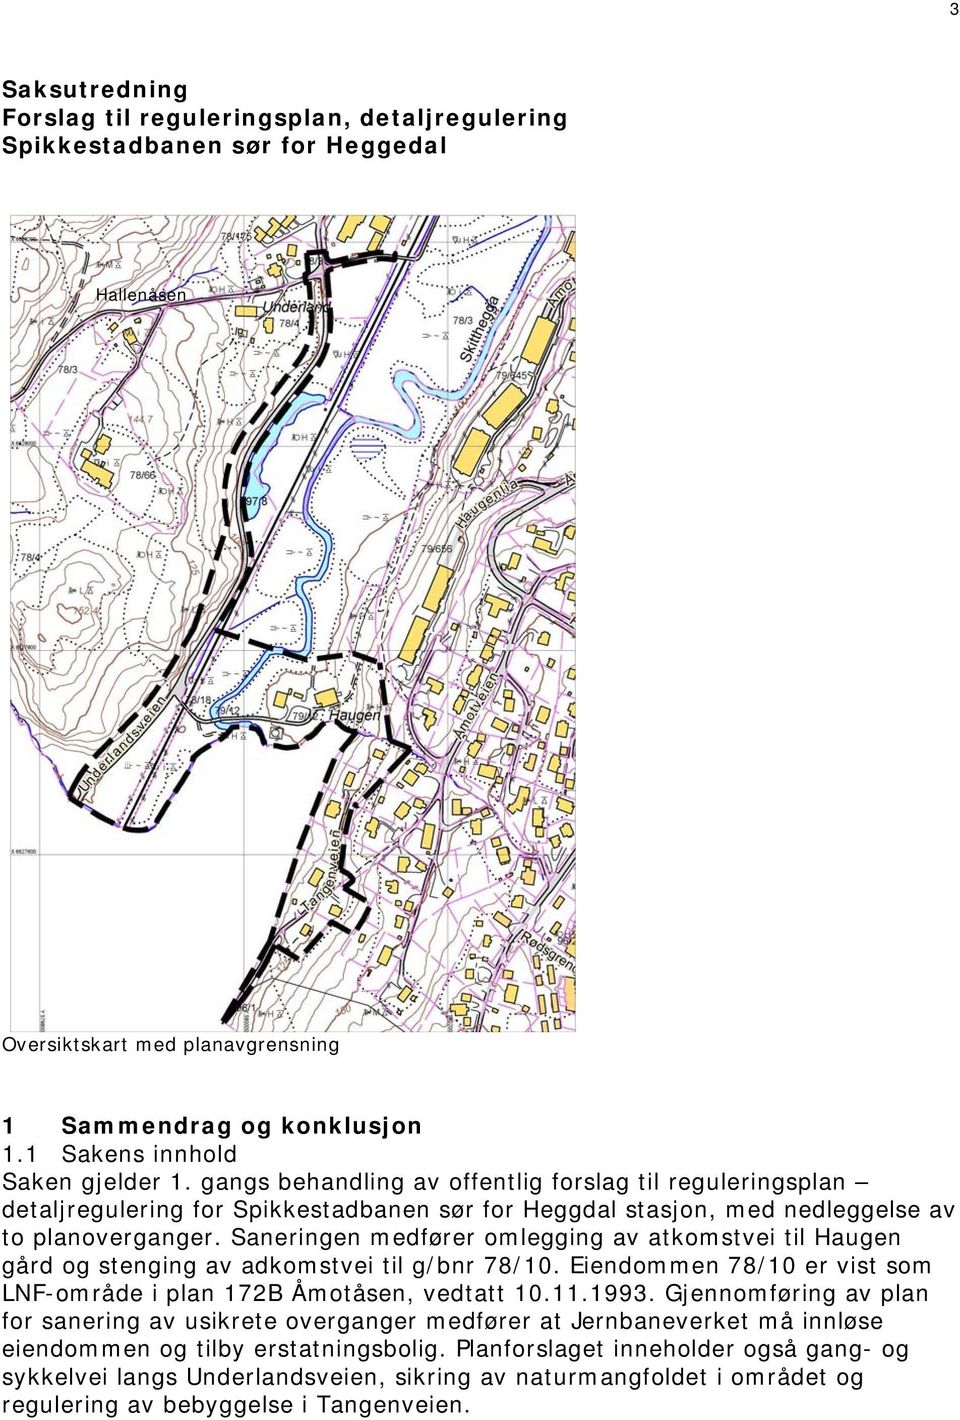 Saneringen medfører omlegging av atkomstvei til Haugen gård og stenging av adkomstvei til g/bnr 78/10. Eiendommen 78/10 er vist som LNF-område i plan 172B Åmotåsen, vedtatt 10.11.1993.